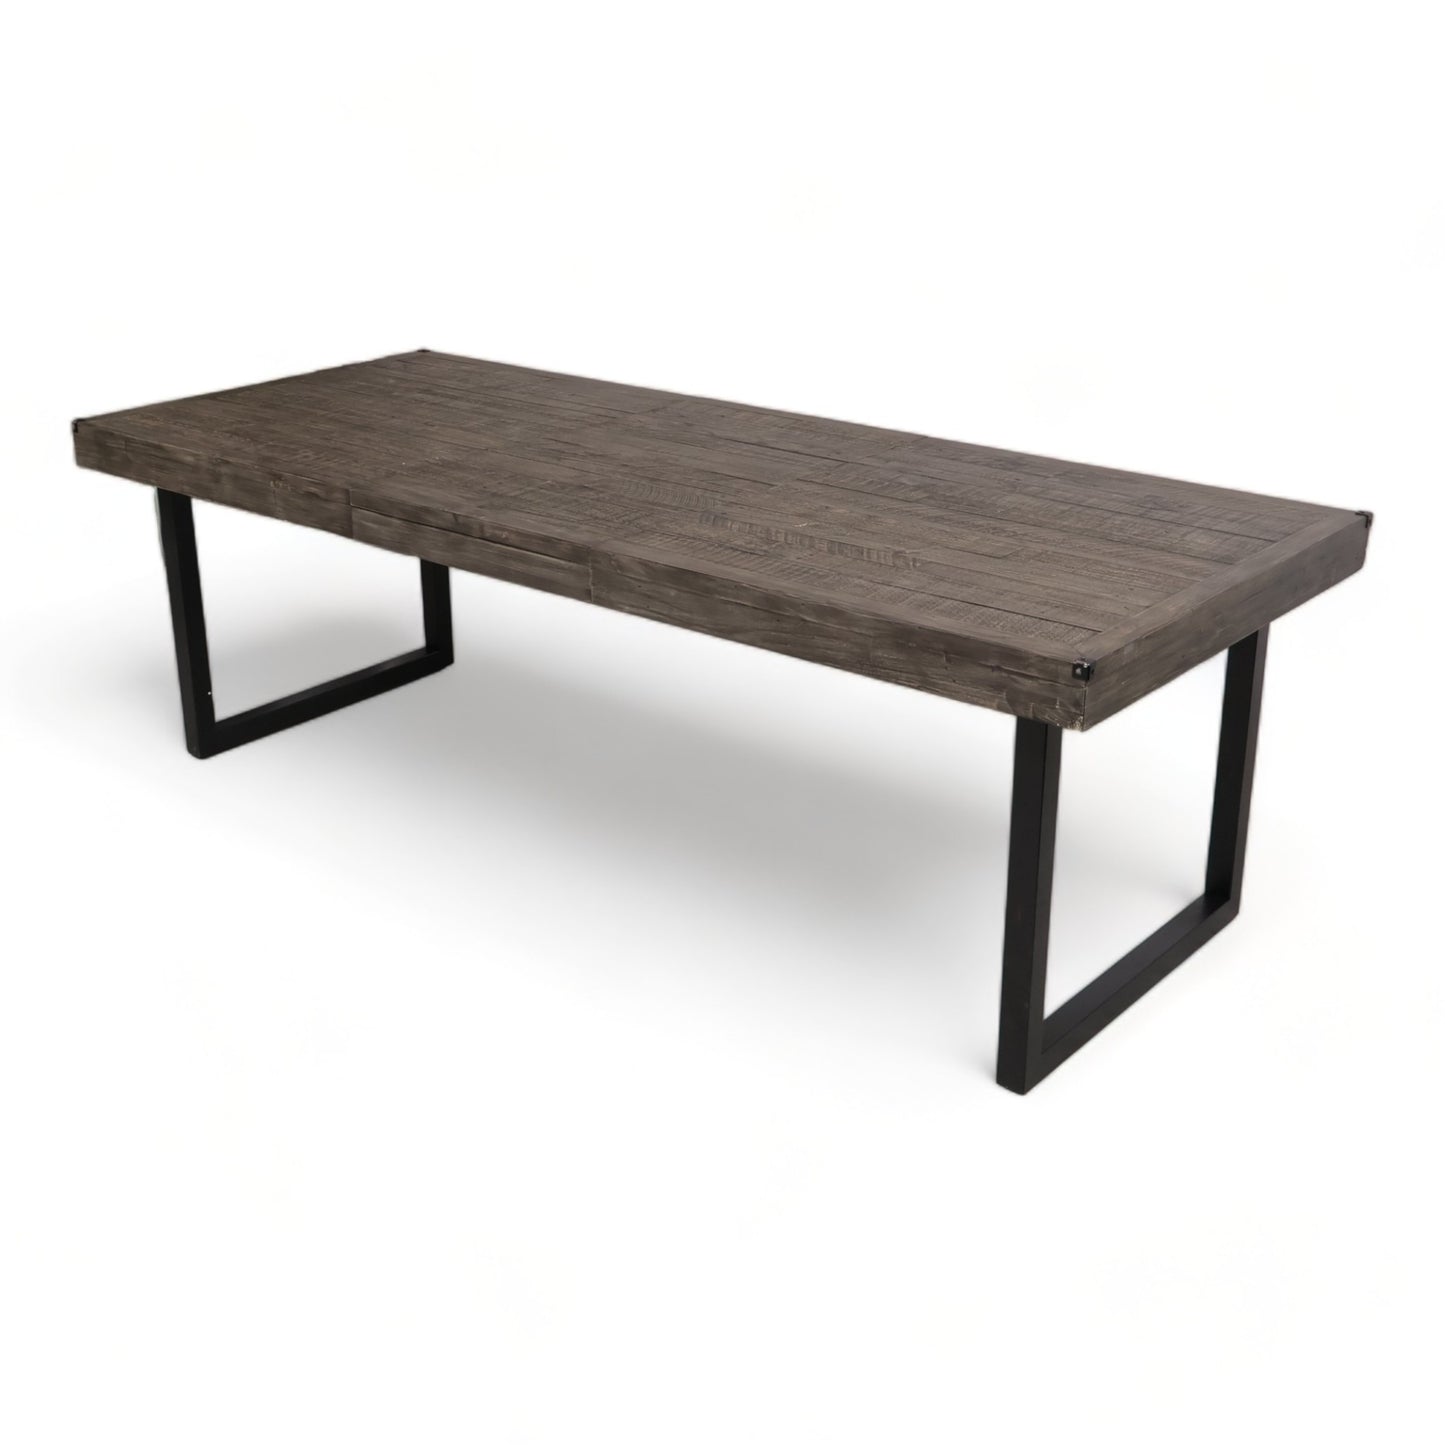 Kvalitetssikret | Woodenforge spisebord fra A-Møbler